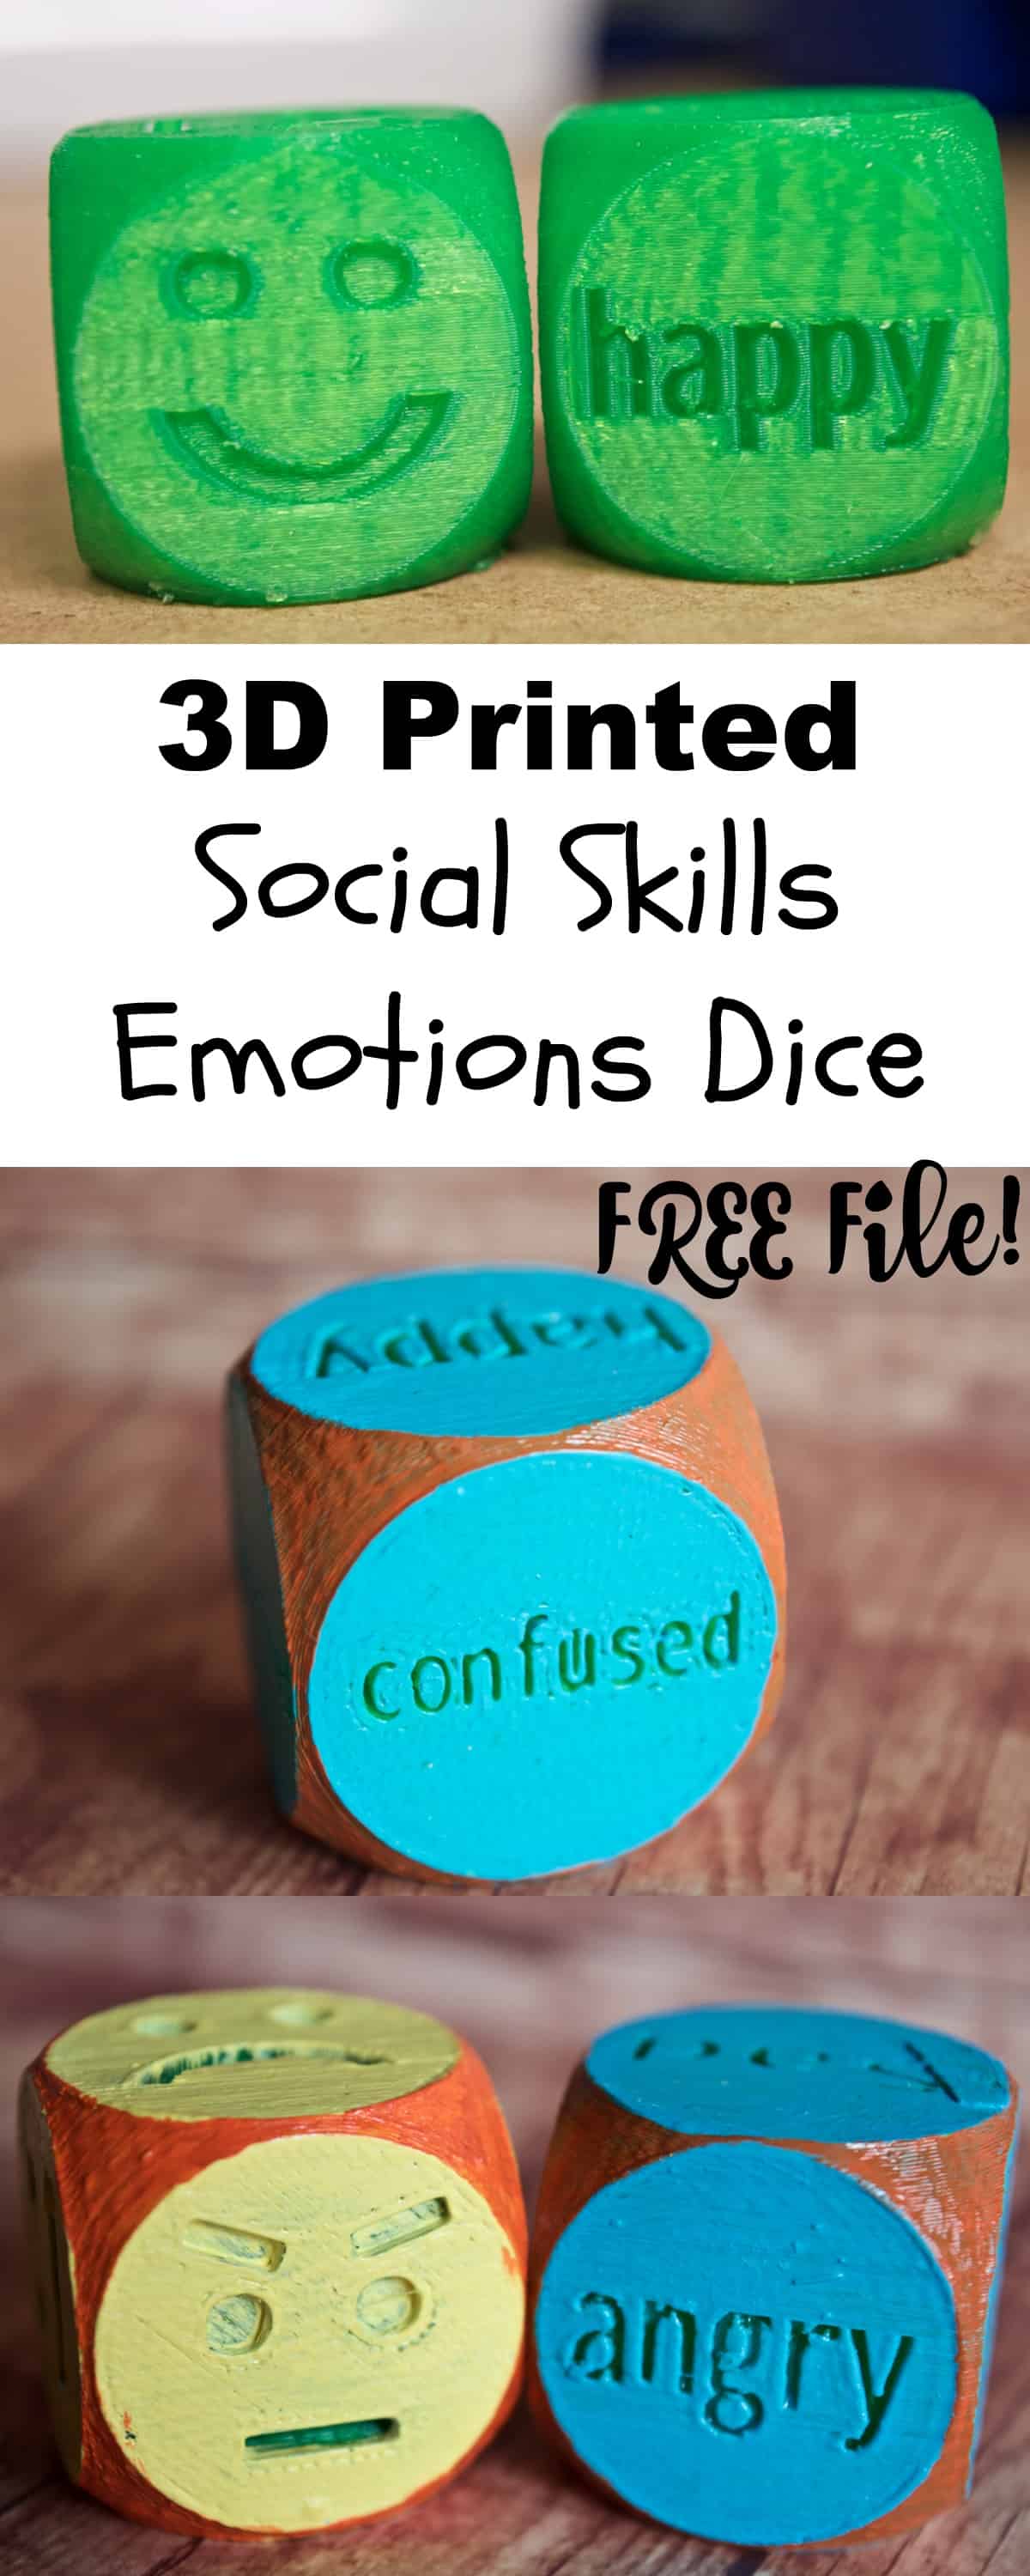 social skills 3d printed dice